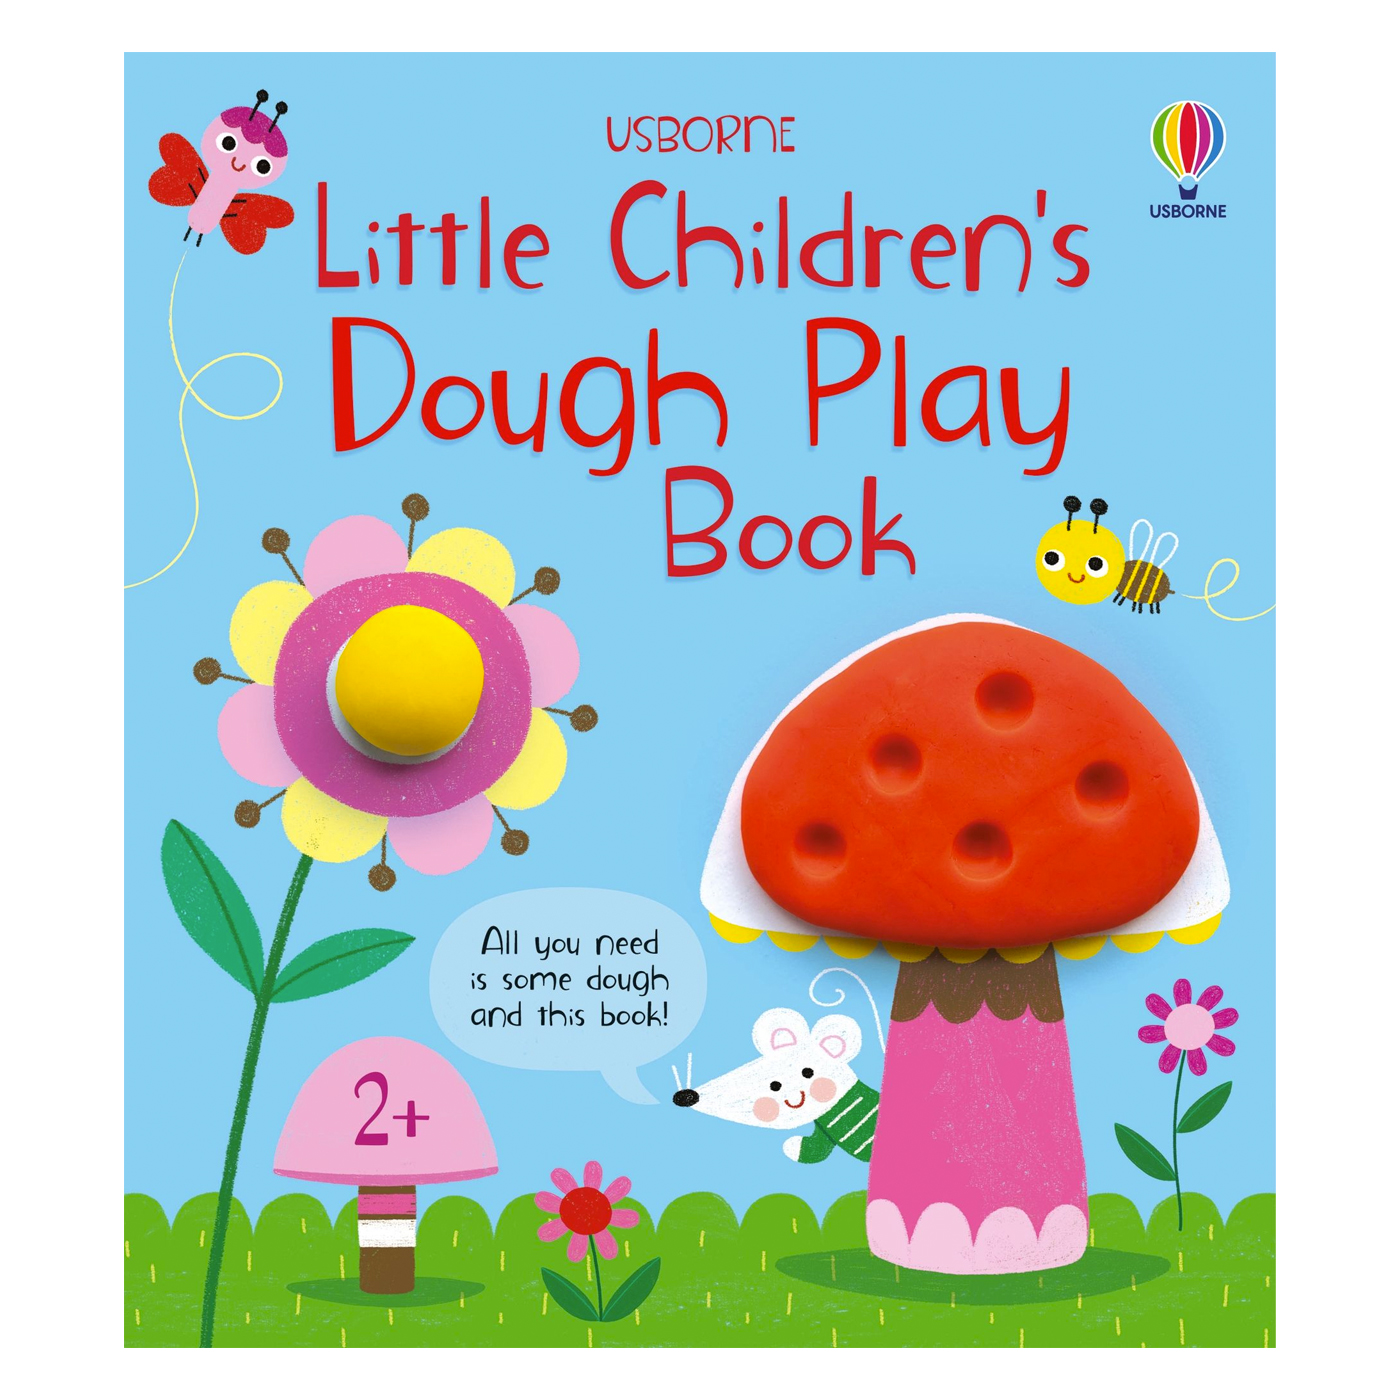  Little Children's Dough Play Book